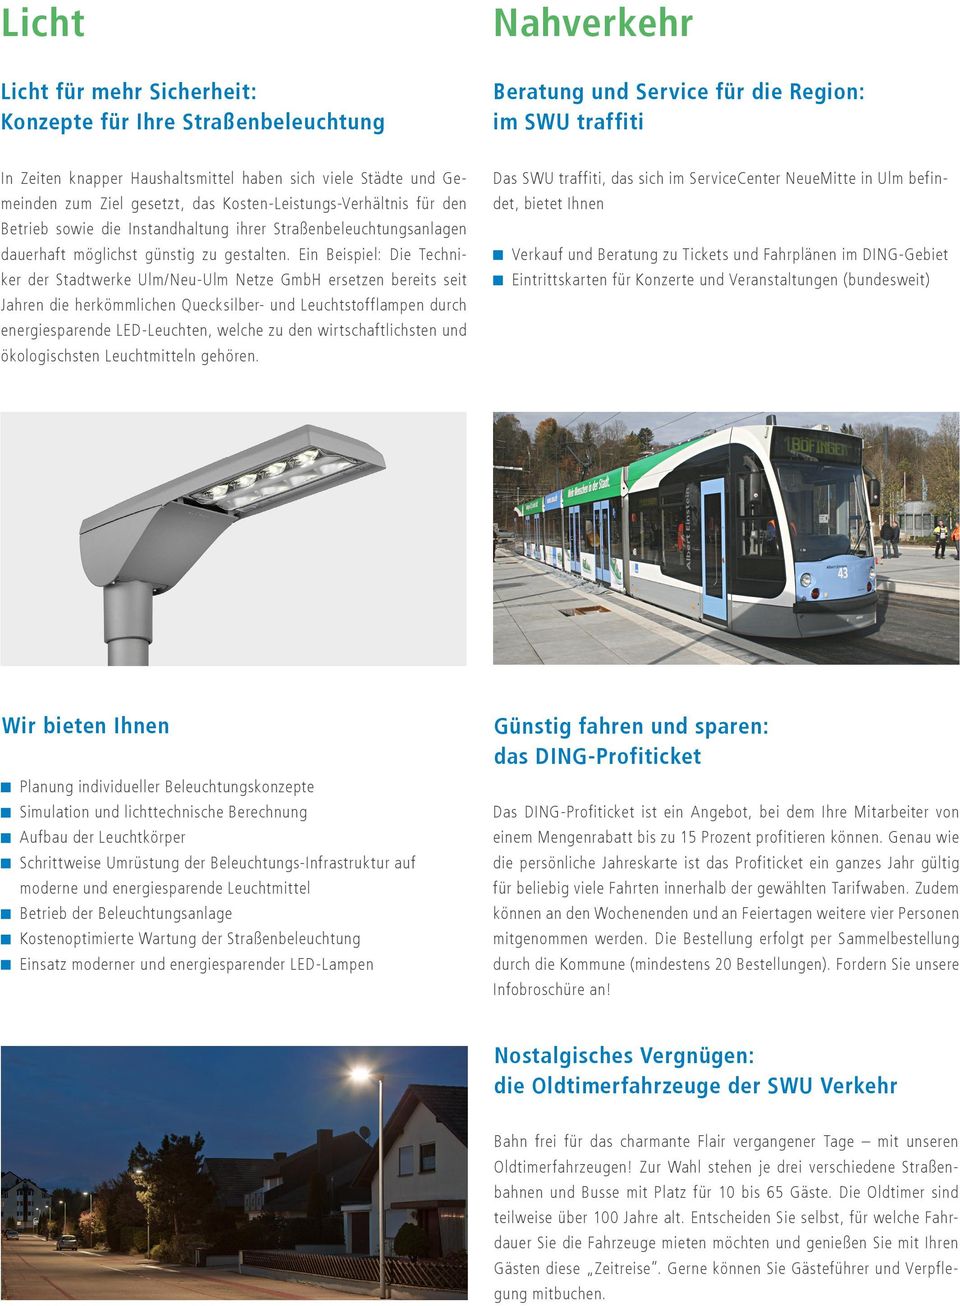 Ein Beispiel: Die Techniker der Stadtwerke Ulm/Neu-Ulm Netze GmbH ersetzen bereits seit Jahren die herkömmlichen Quecksilber- und Leuchtstofflampen durch energiesparende LED-Leuchten, welche zu den